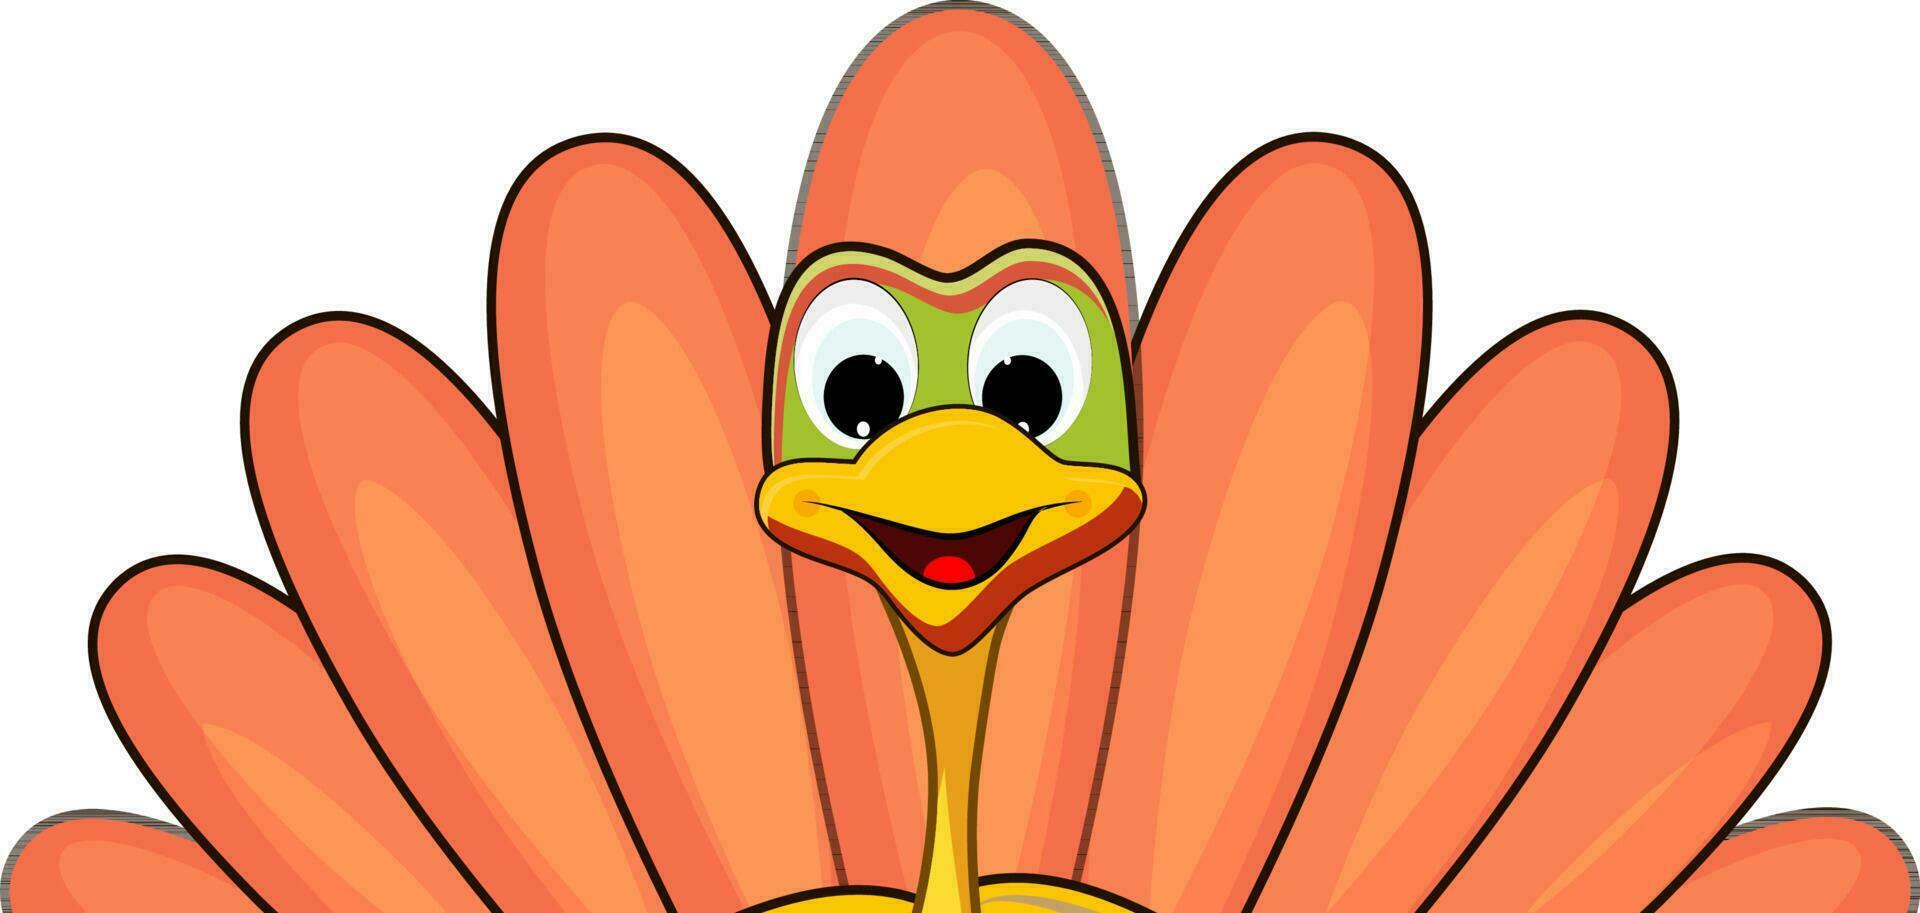 Illustration of turkey bird face. vector